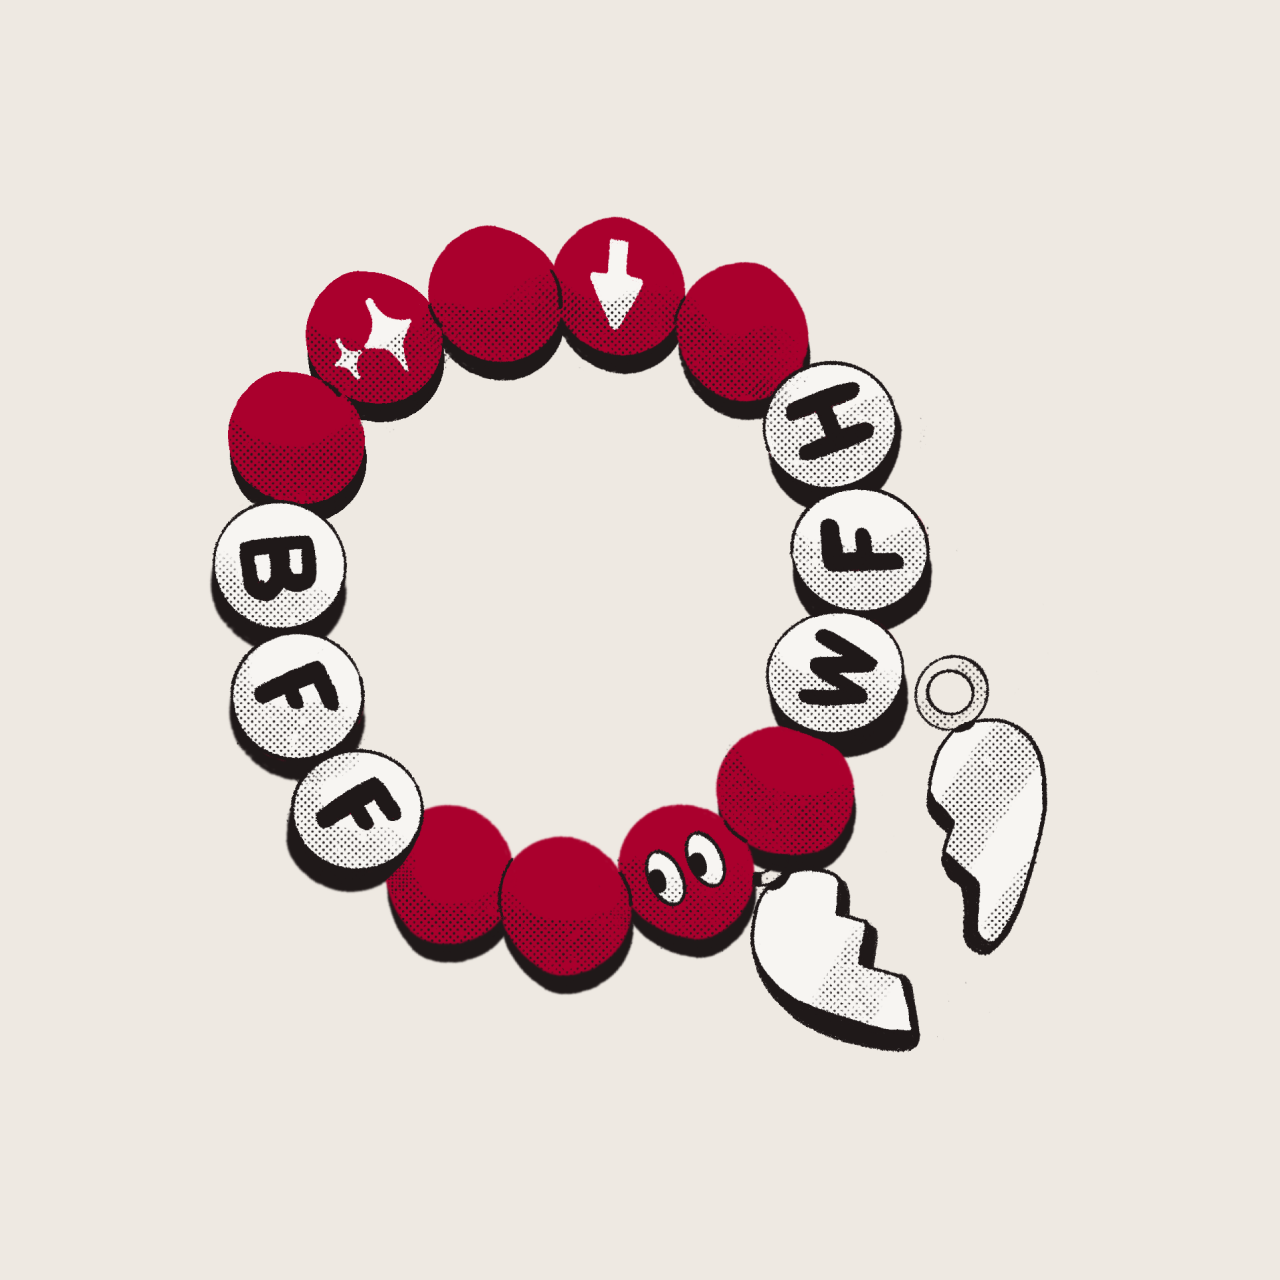 En illustration af et venskabsarmbånd i perler med bogstaverne “BFF” og “WFH”